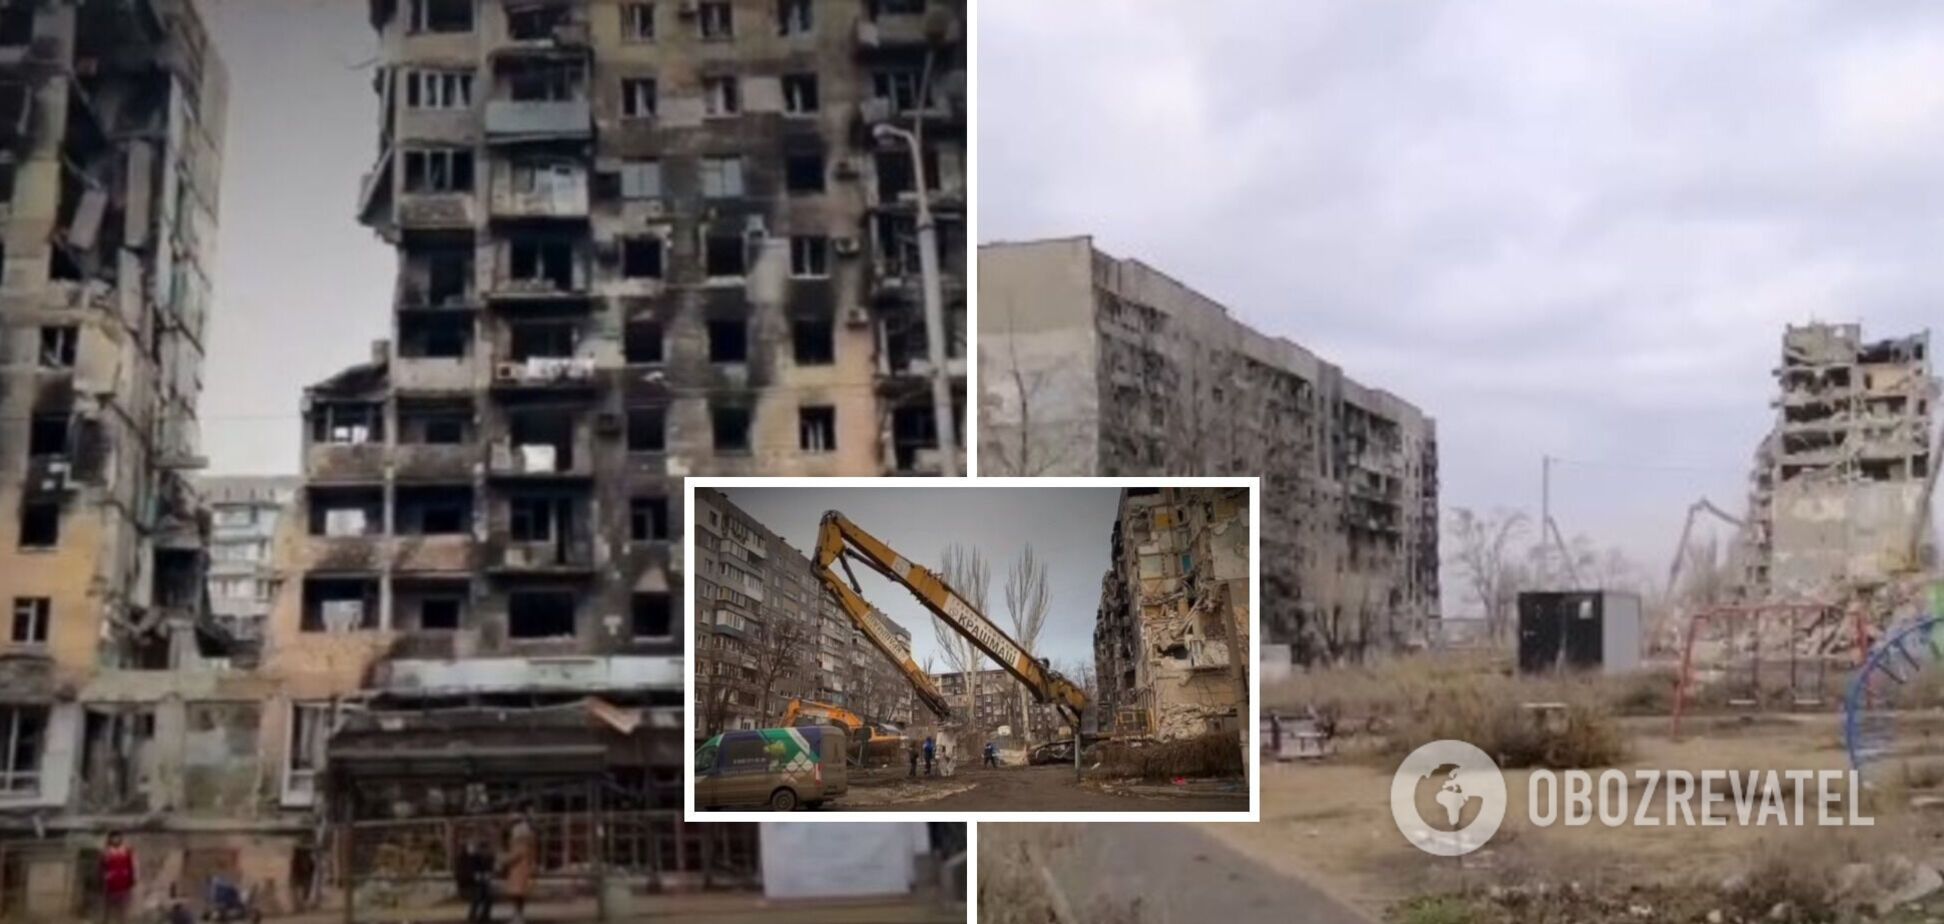 'Ощущение, которое не передать словами': в сети показали, что осталось от домов украинцев в Мариуполе. Видео